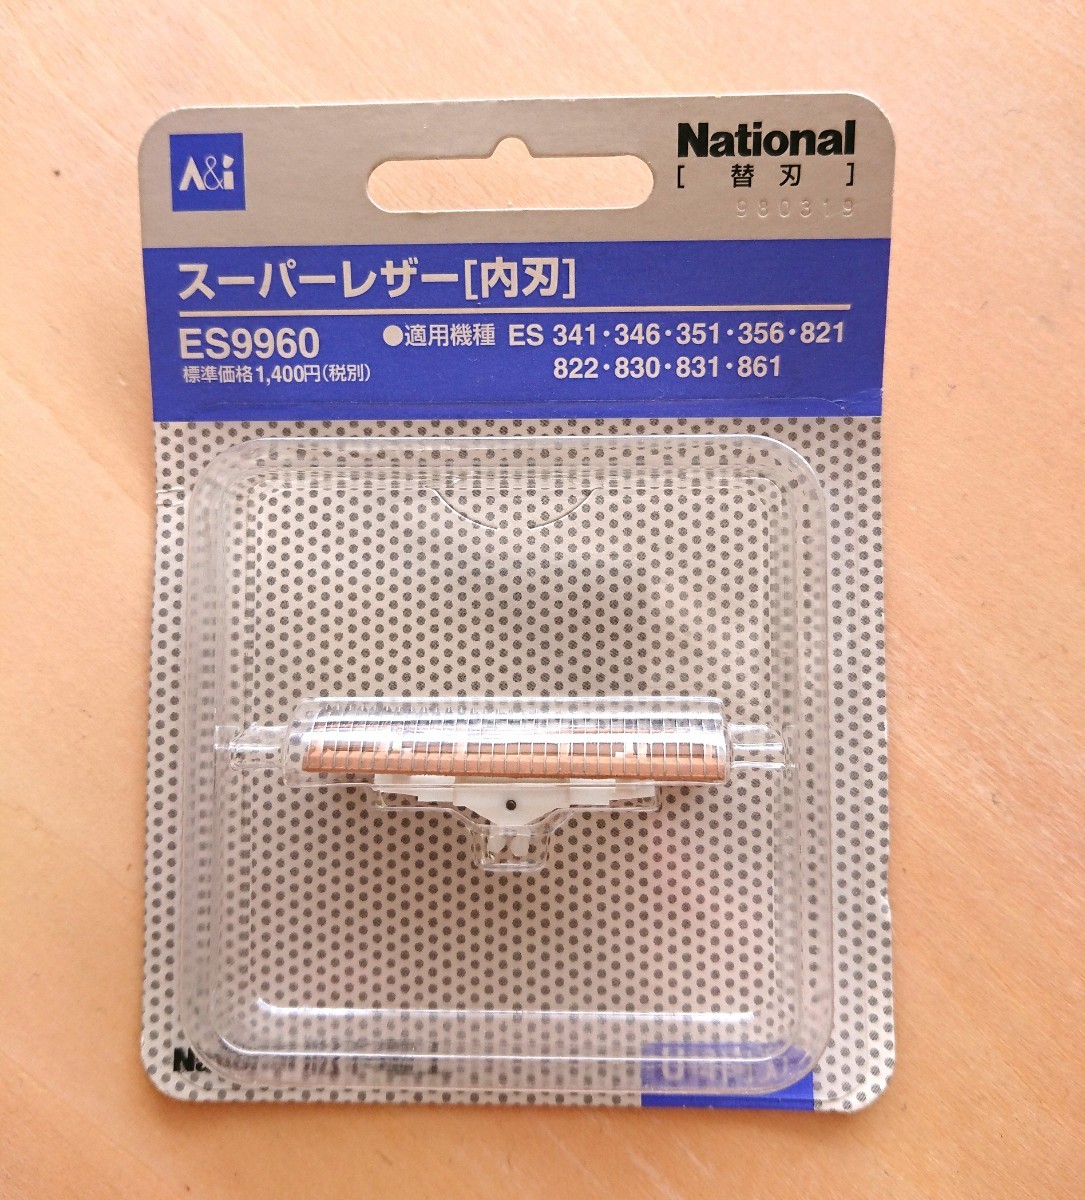 【新品】National 純正 メンズシェーバー 替刃 内刃 ES9960